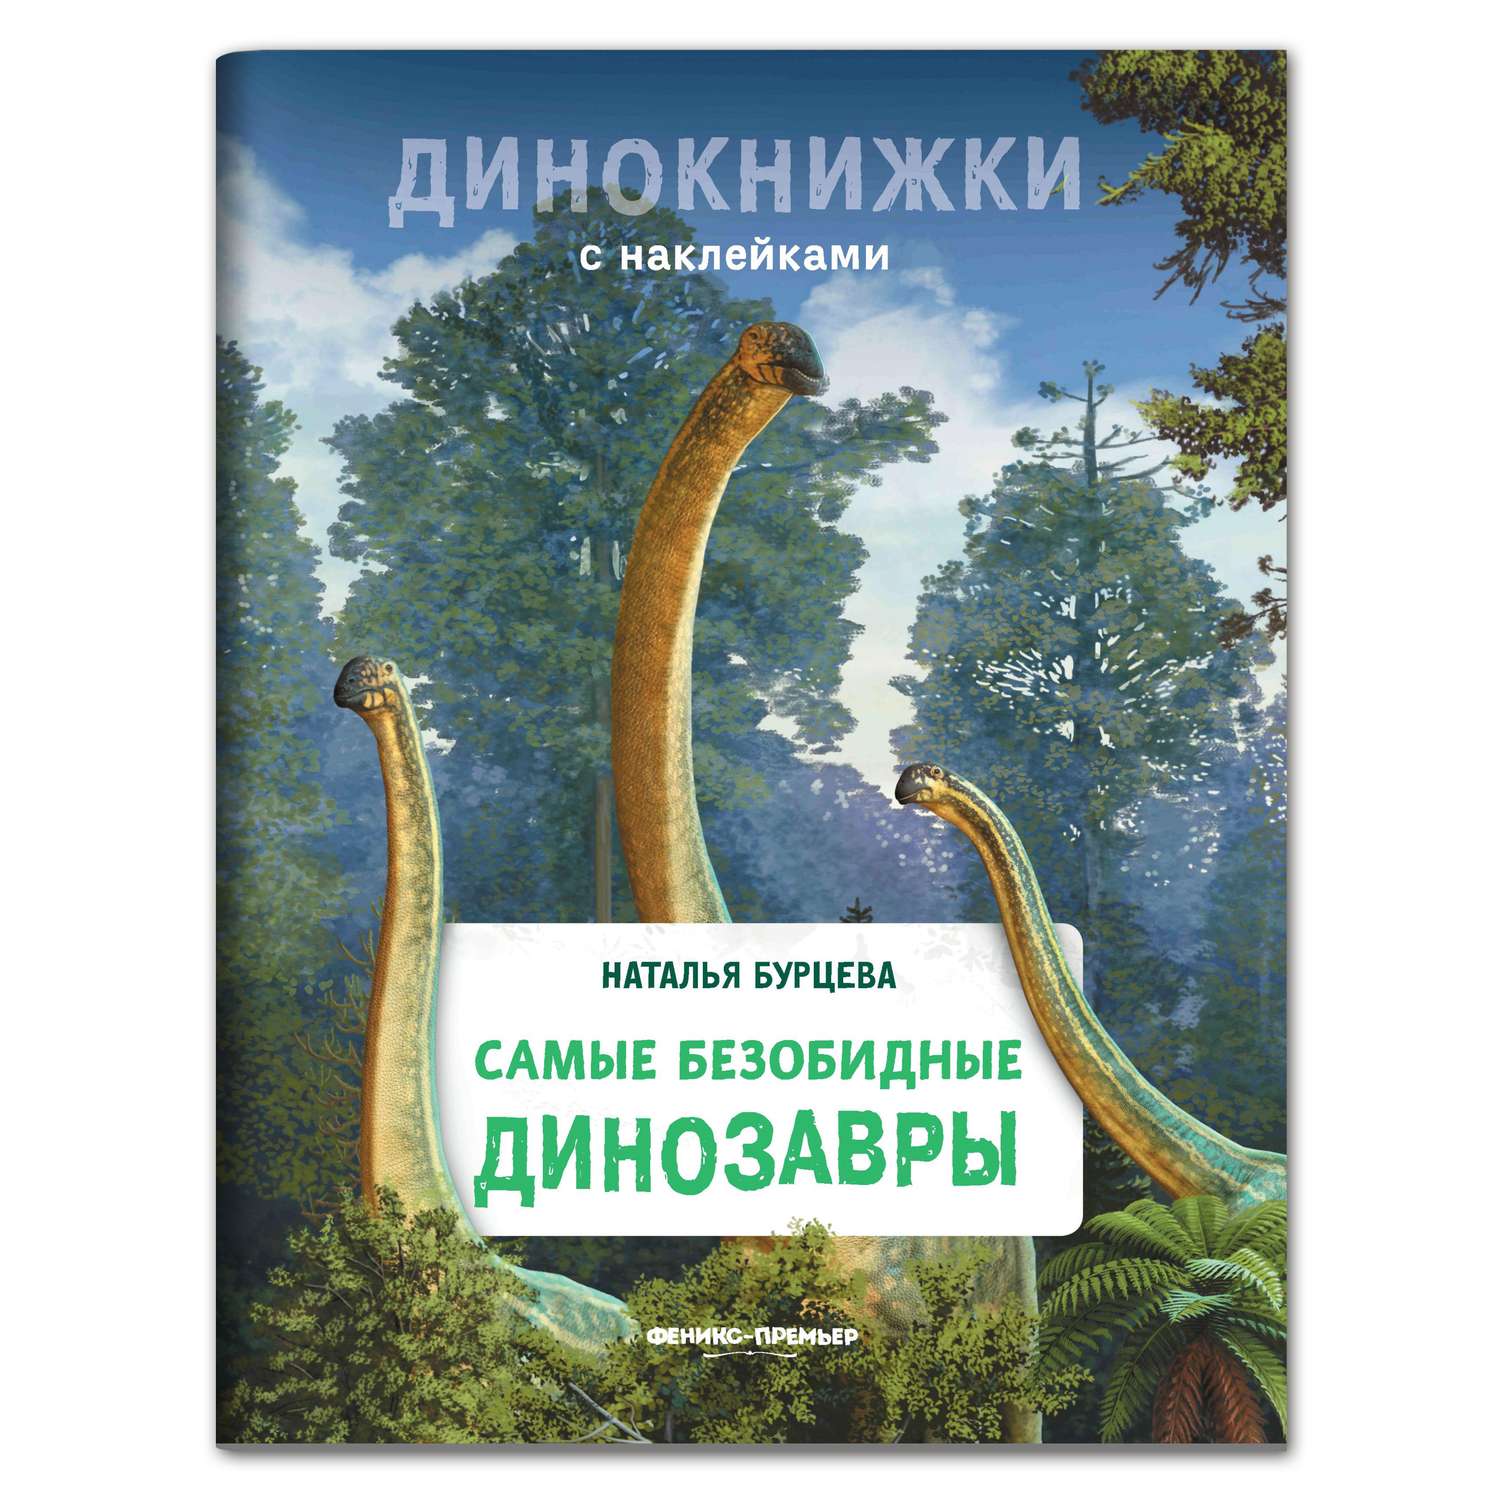 Книга Феникс Премьер Самые безобидные динозавры. Динокнижка с наклейками - фото 1